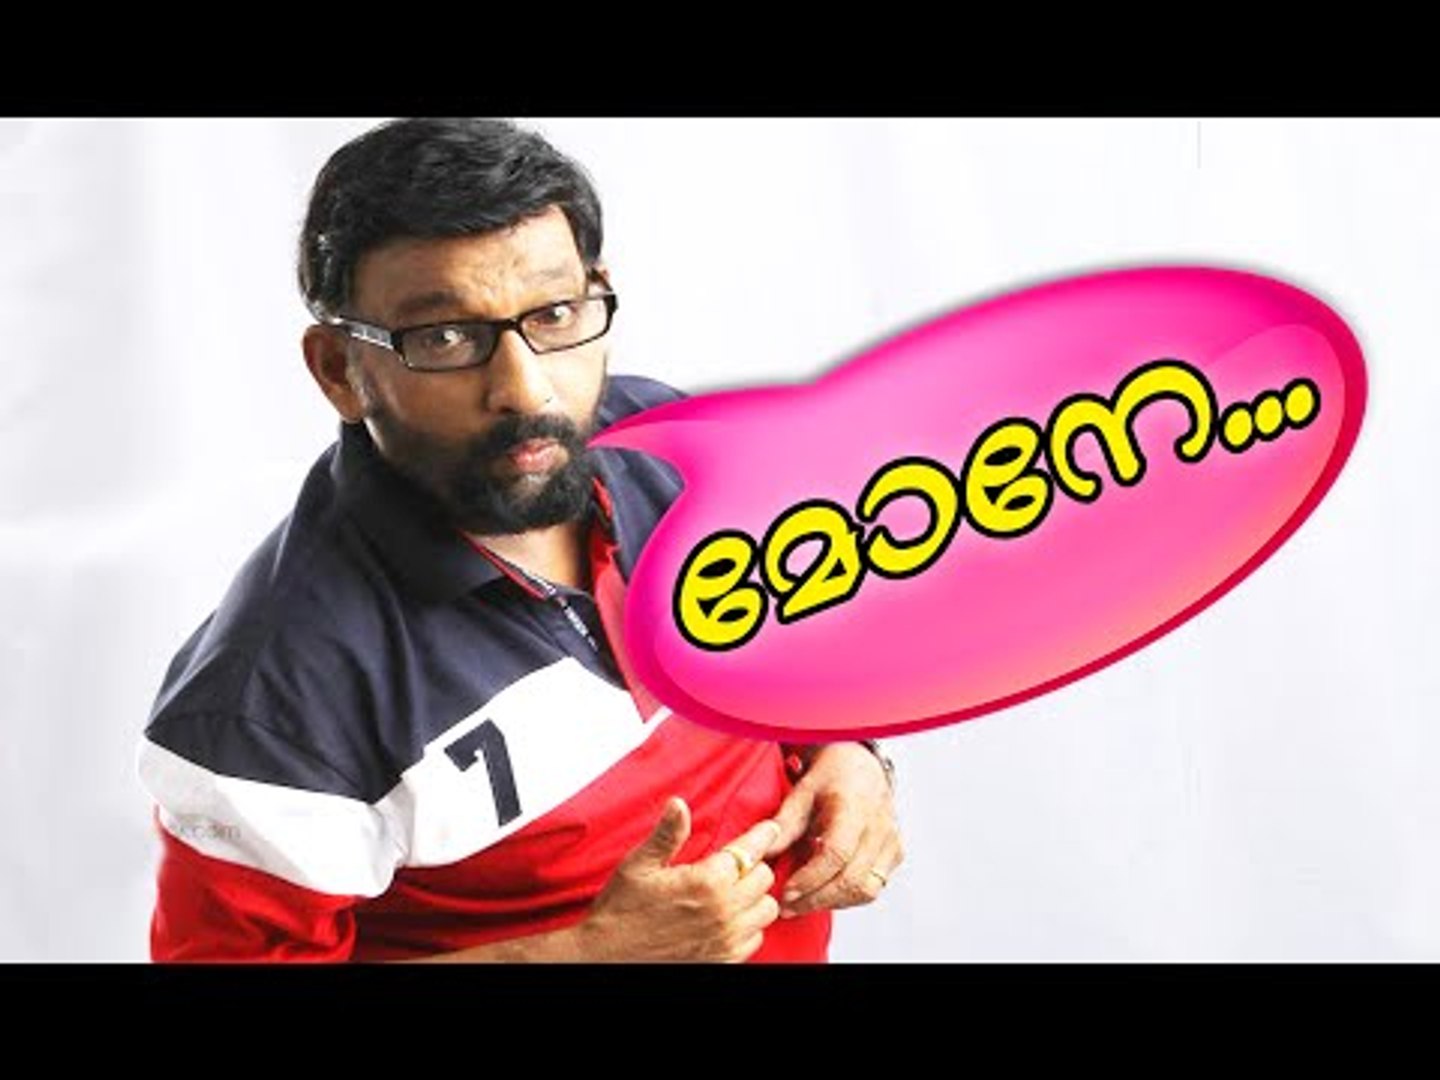 മോനേ പിന്നെ അന്ന് ... | Malayalam Comedy Movies | Malayalam Comedy Scenes From Movies [HD]